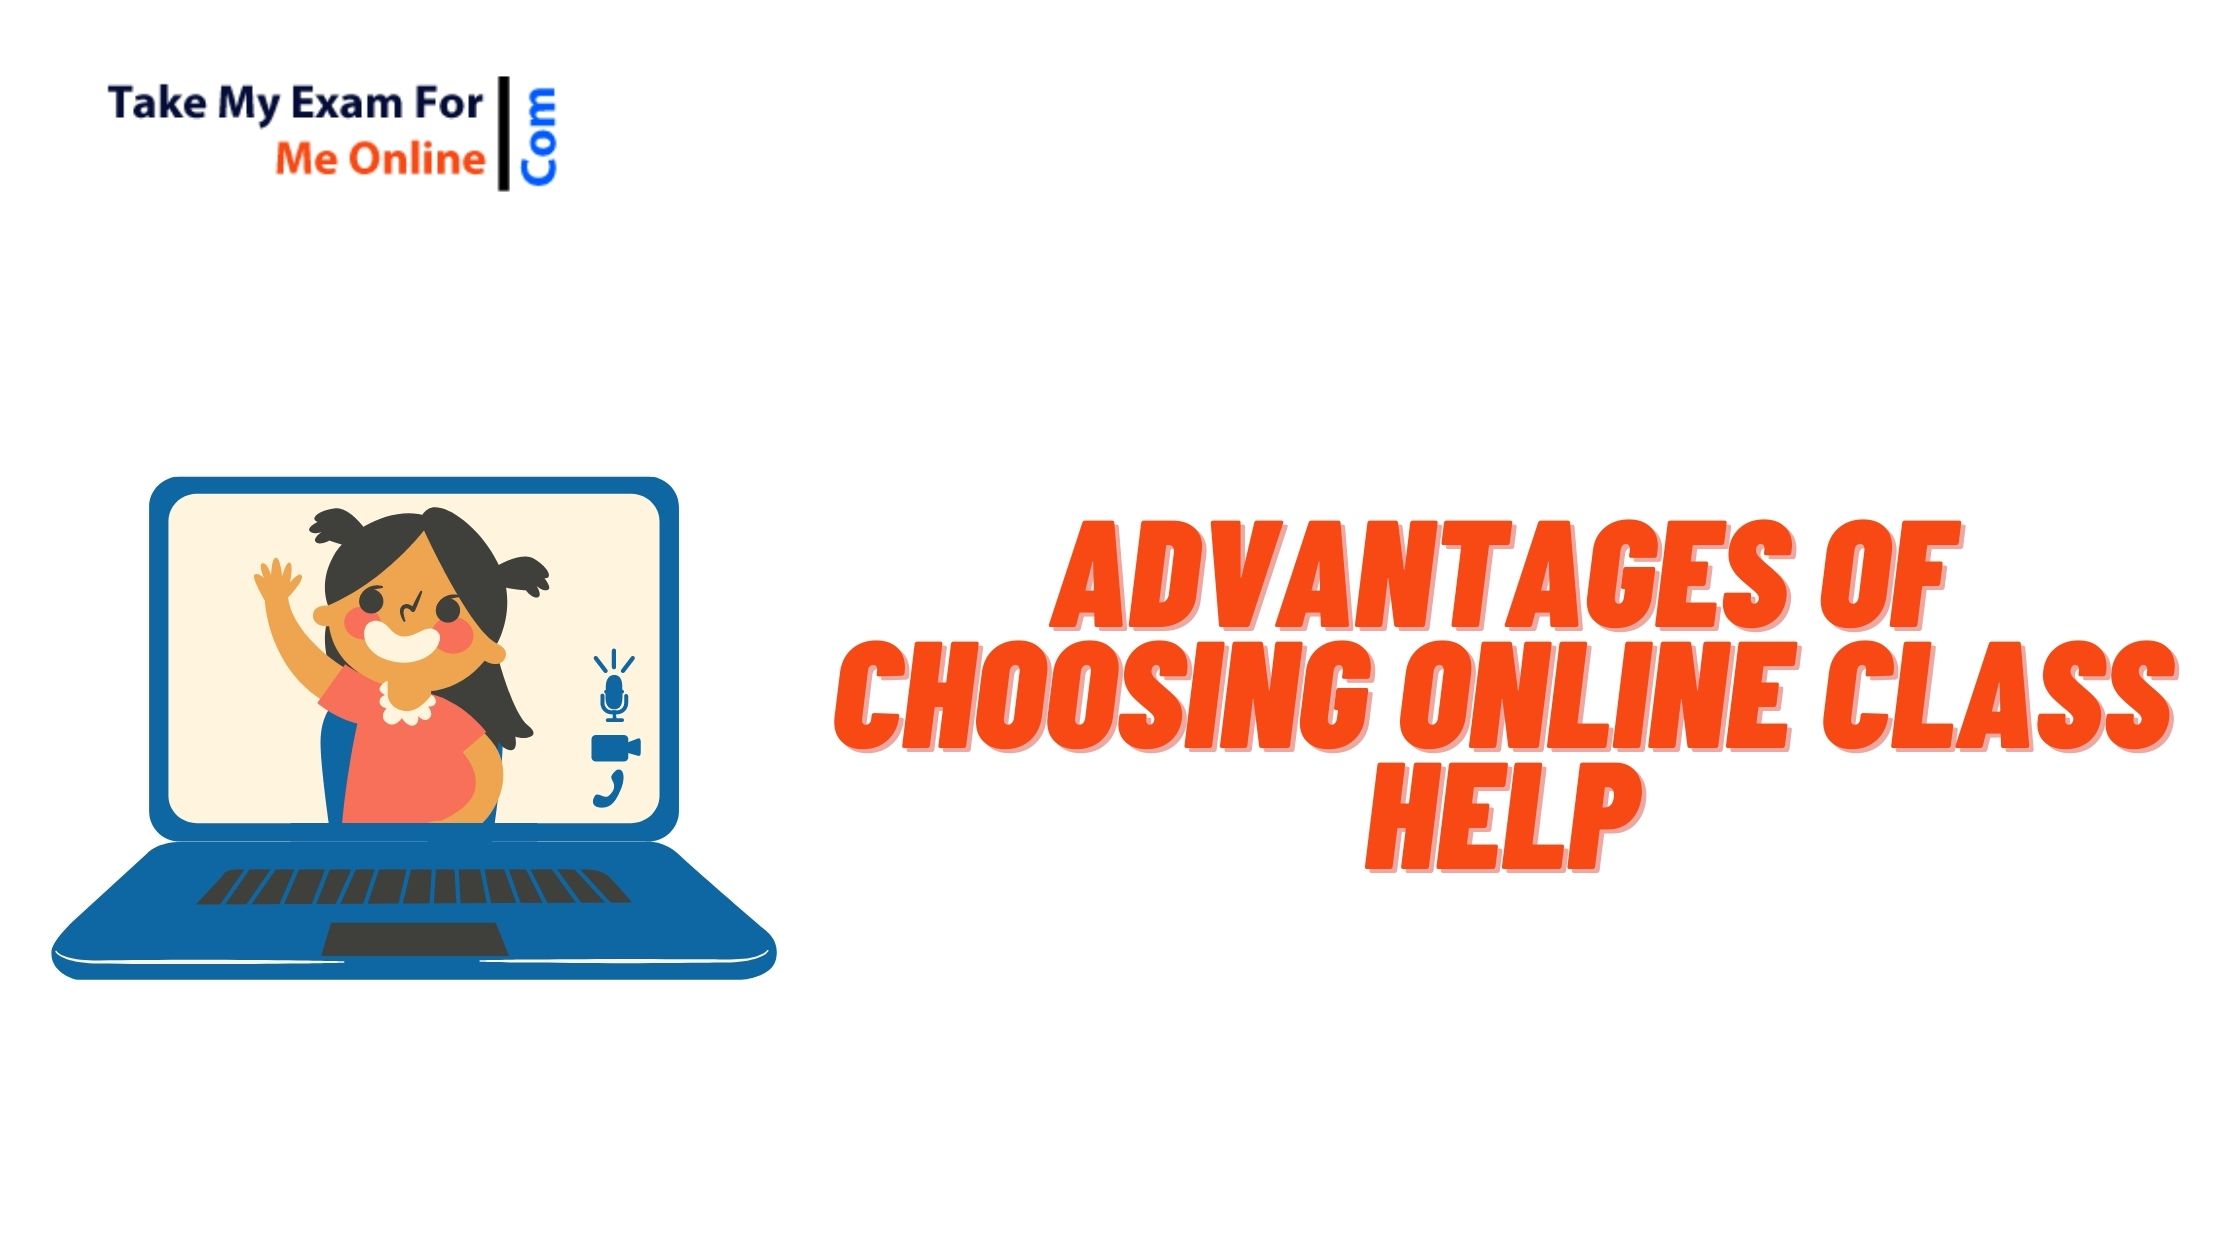 Advantages of choosing online class help